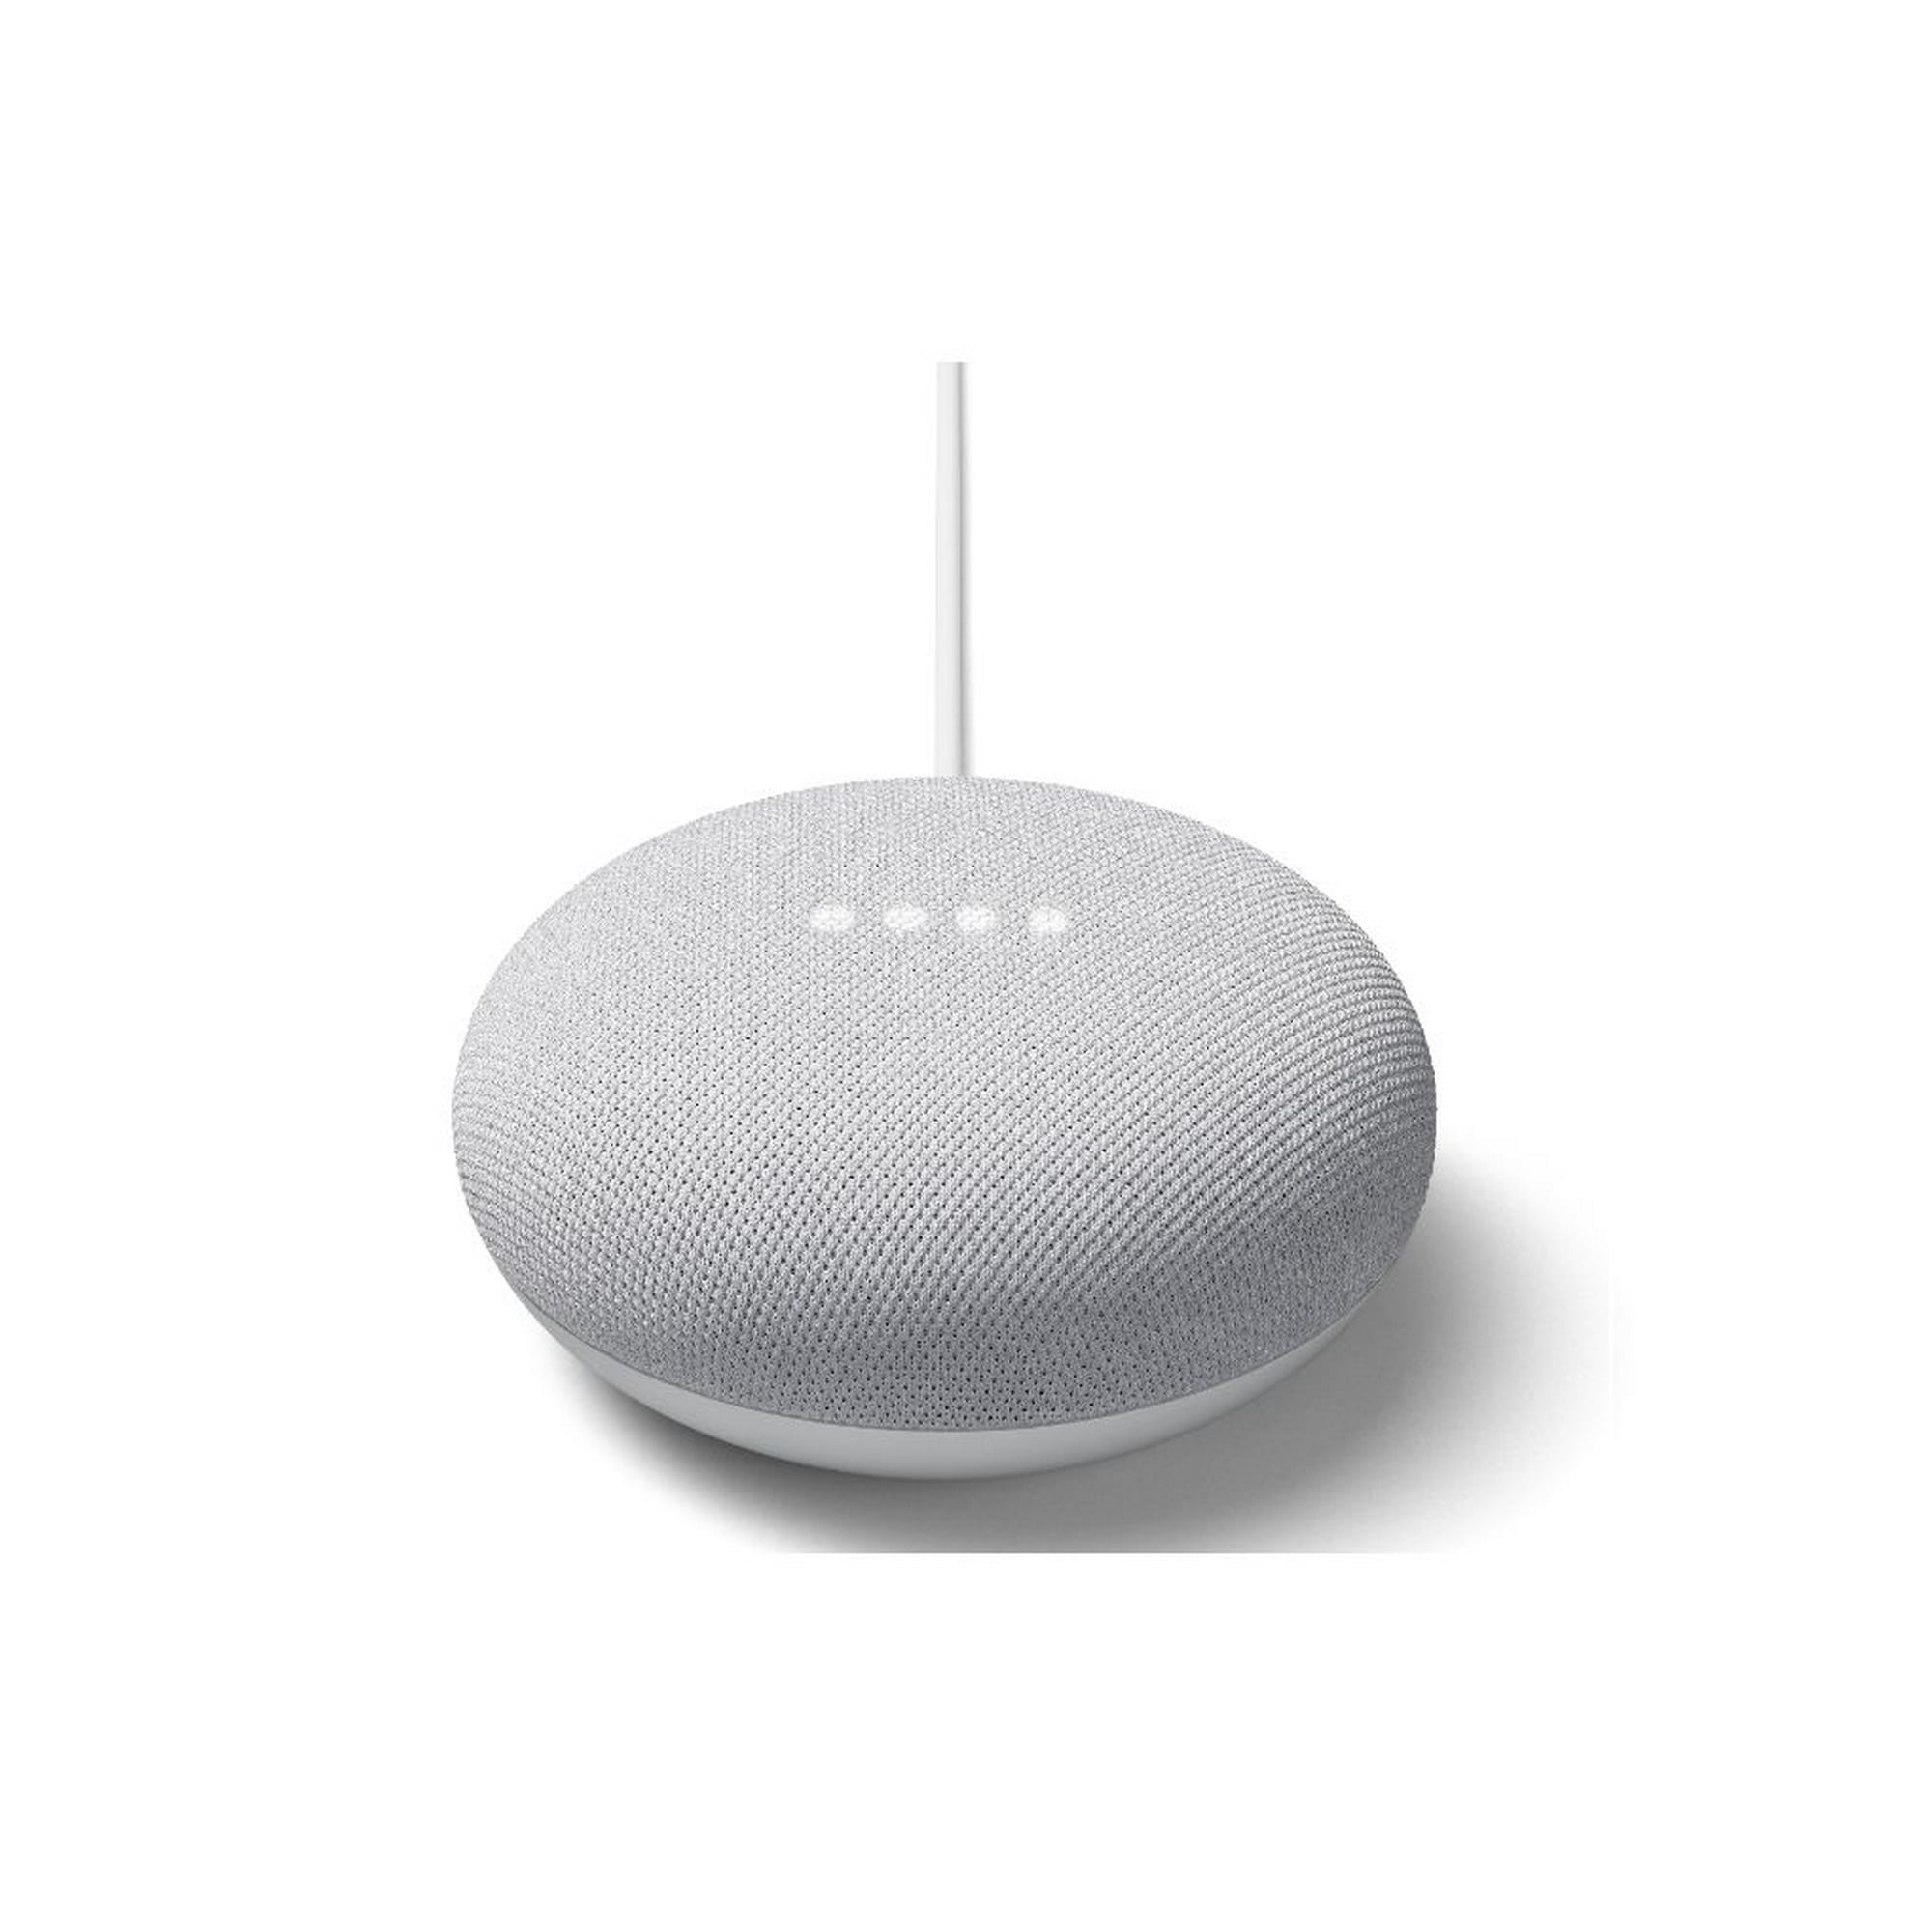 Google Nest Mini (2nd Generation) Smart Speaker, Speaker you